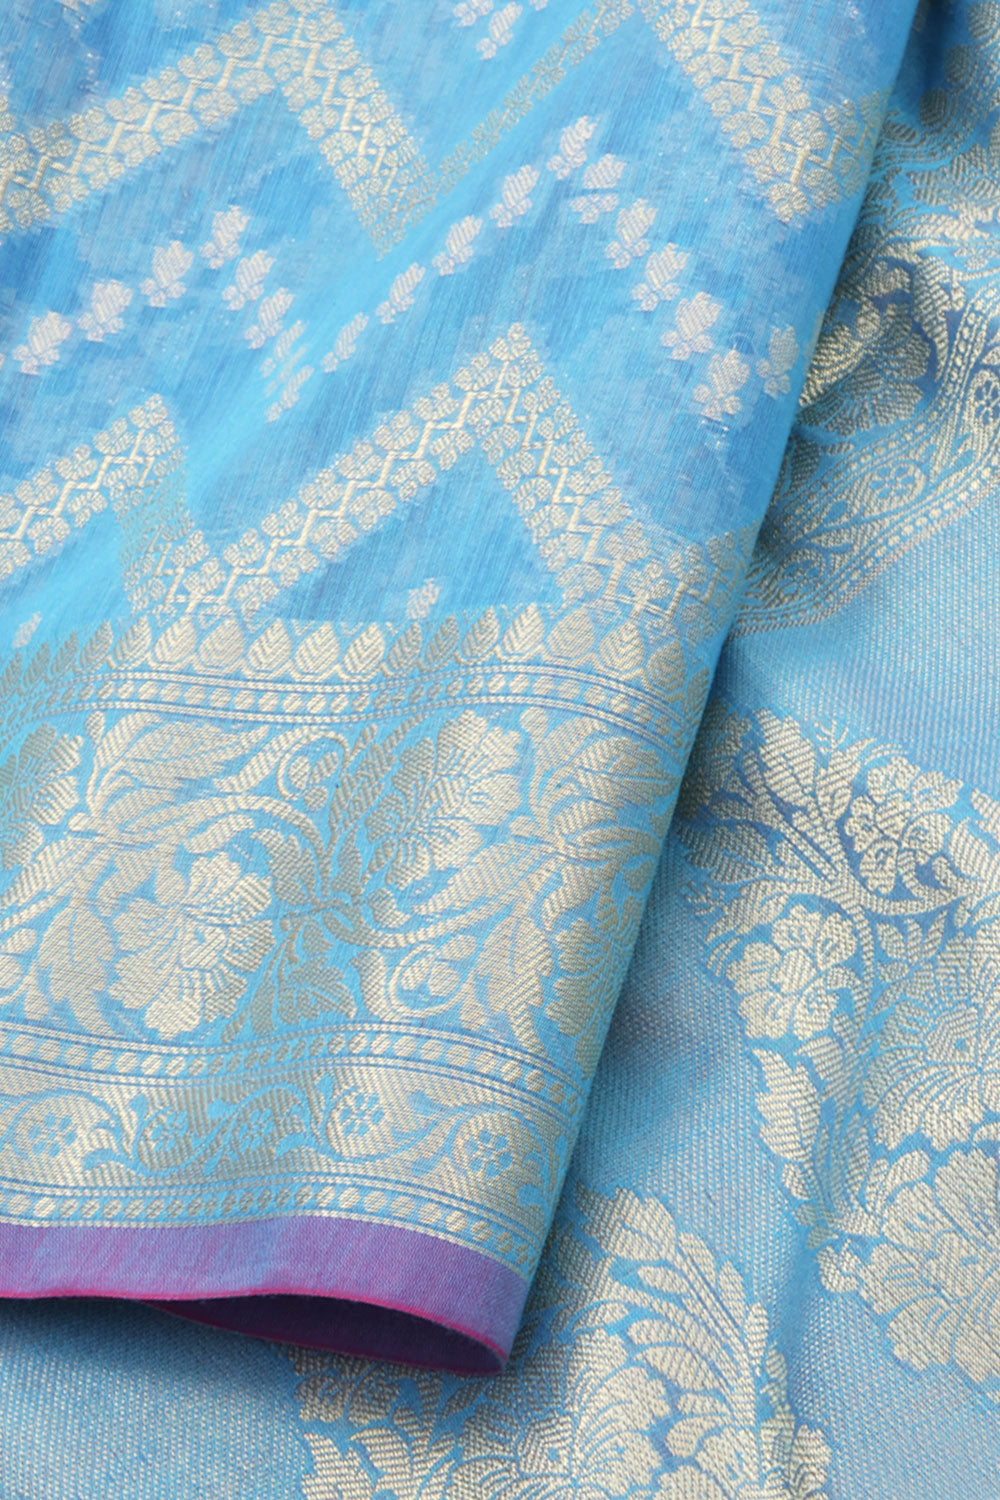 Sky Blue Handloom Banarasi Cotton Saree 10059738